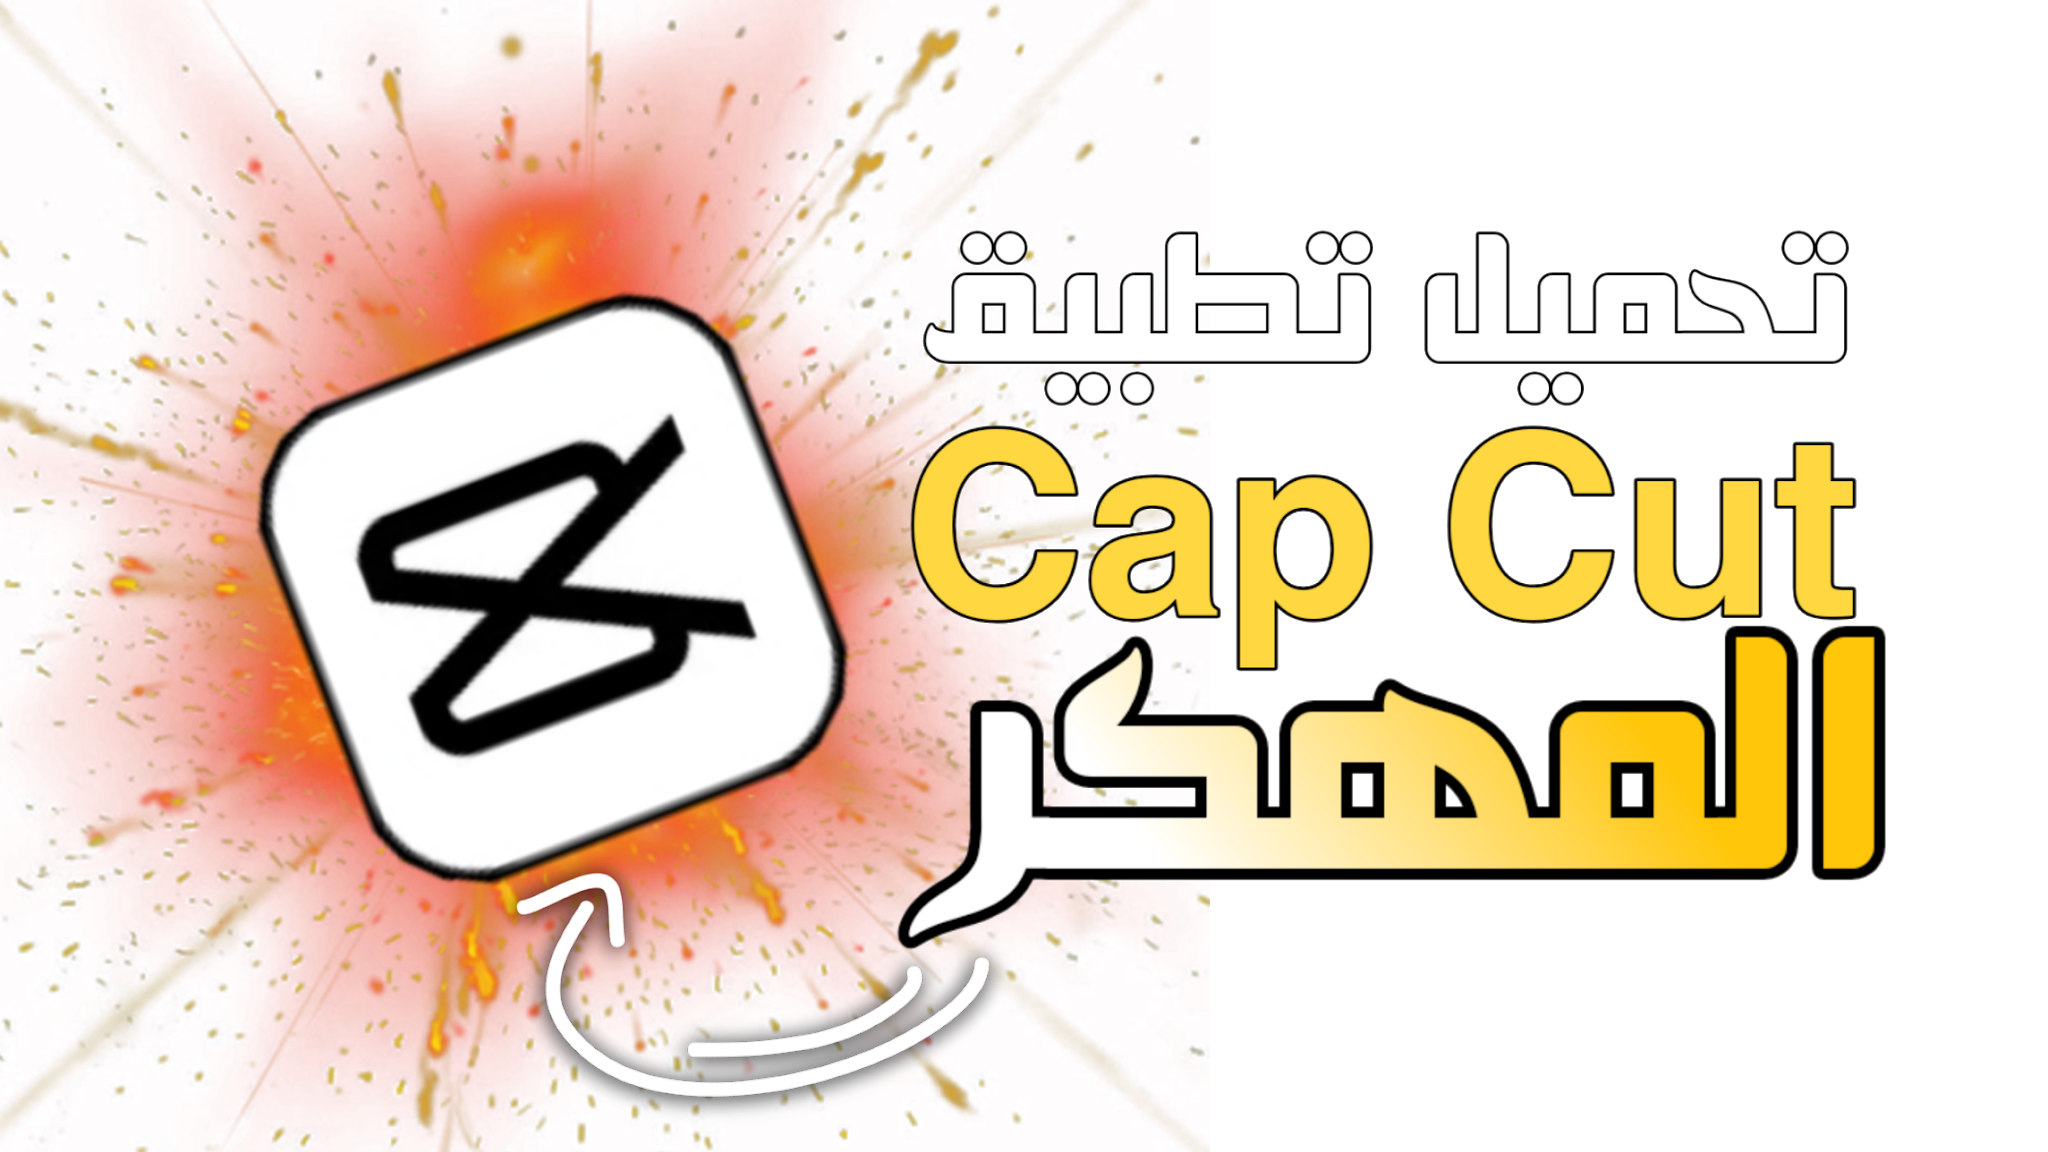 Capcut музыка. CAPCUT лого. Cap Cut логотип. Хабиби CAPCUT. Cap Cut logo PNG.